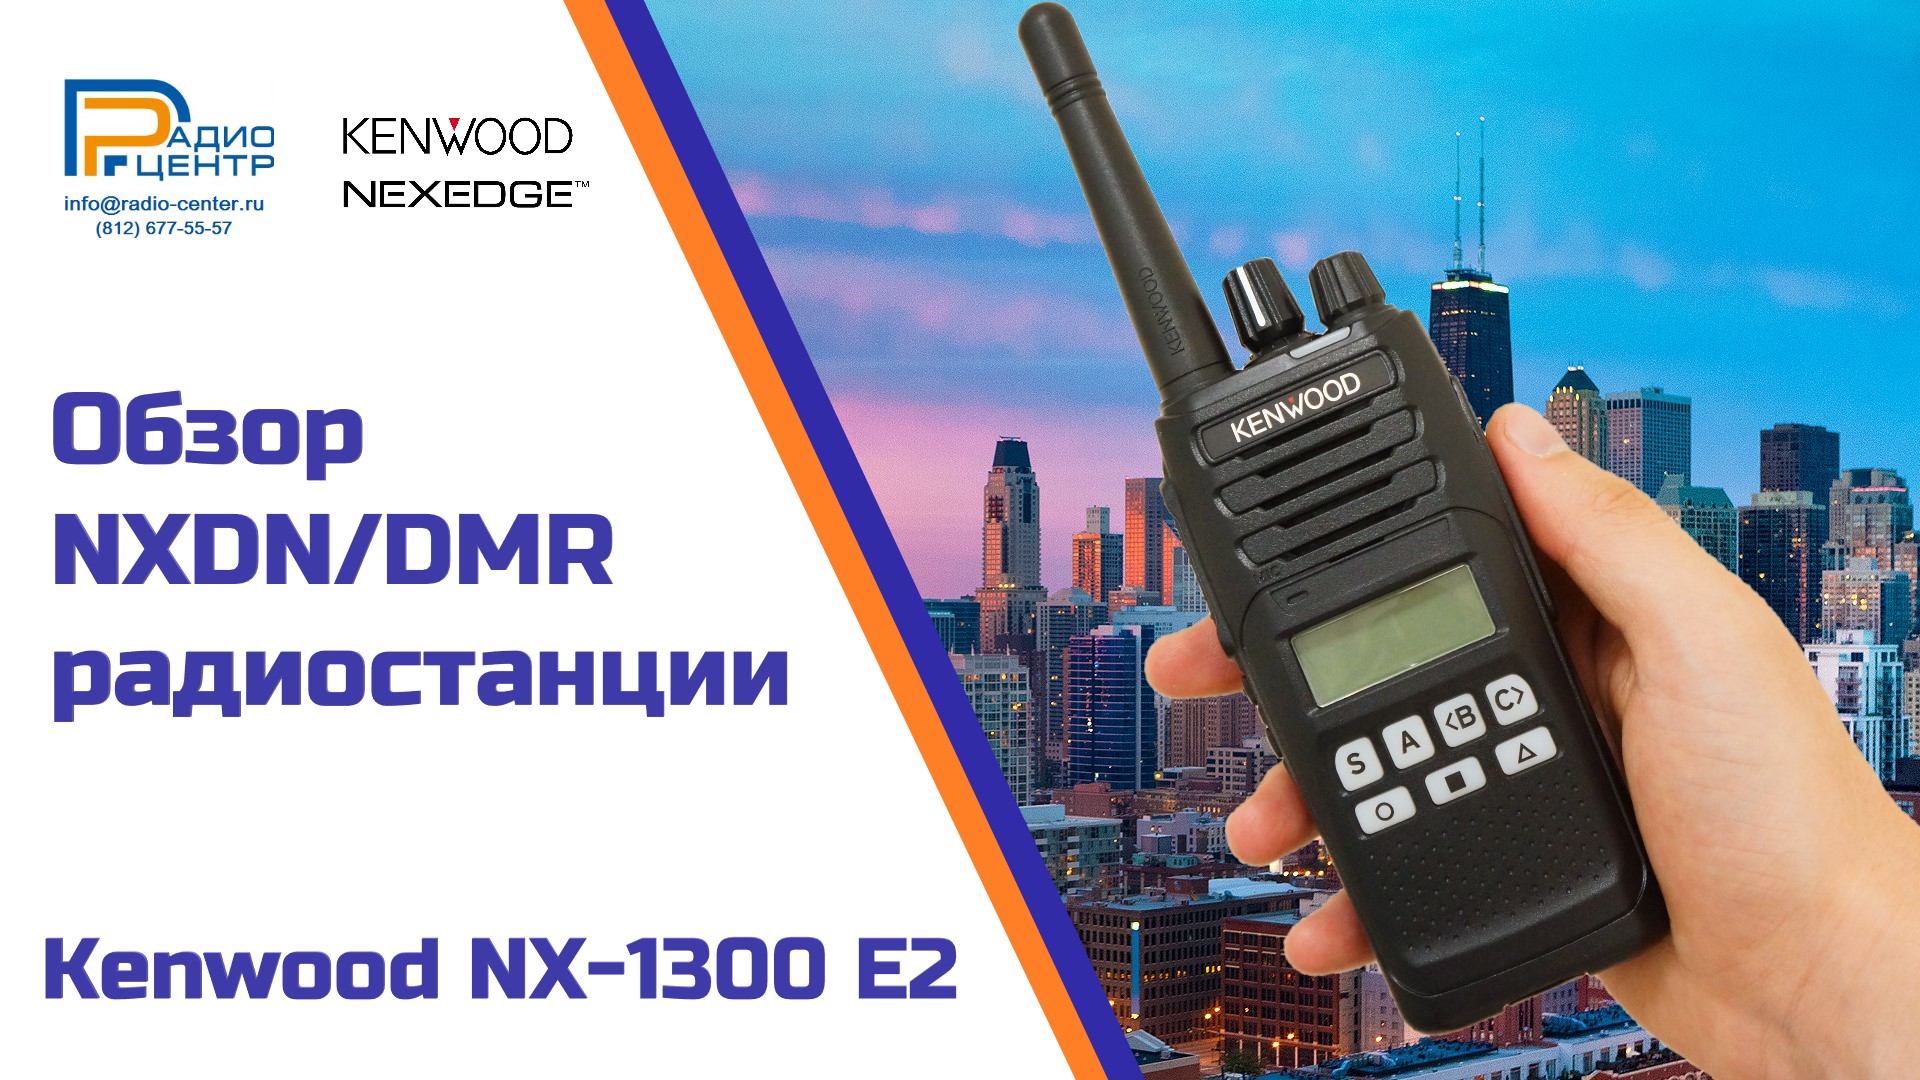 Предлагаем Вам видео обзор новой цифровой портативной радиостанции Kenwood NX-1300E2<